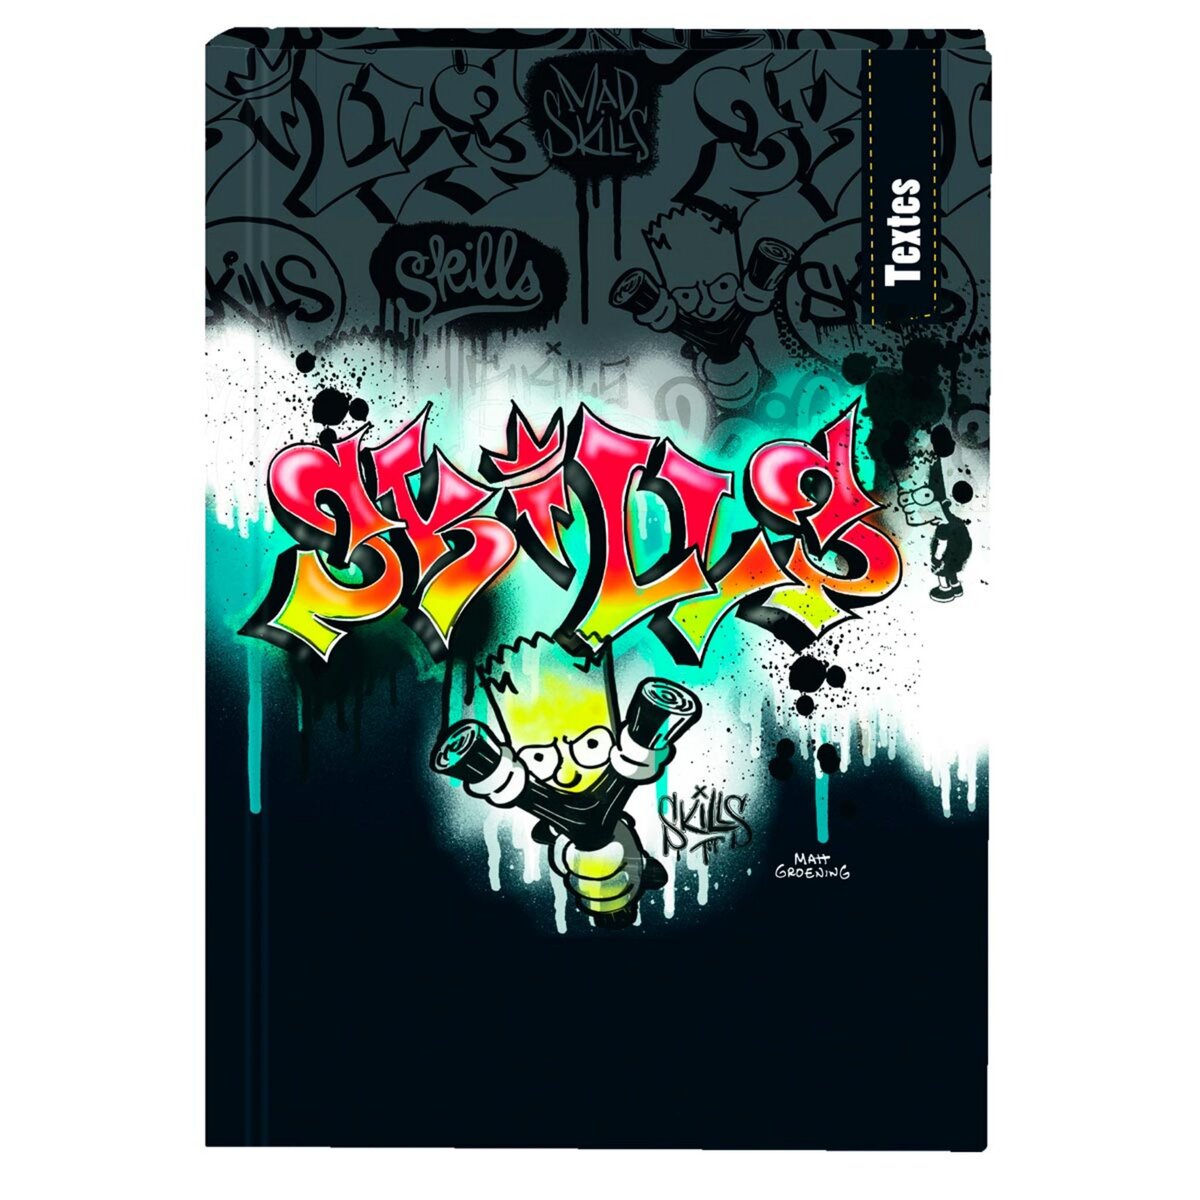 Cahier de texte garçon 15,5x21,7cm - couverture rigide - Les Simpsons bart skills graffiti noir